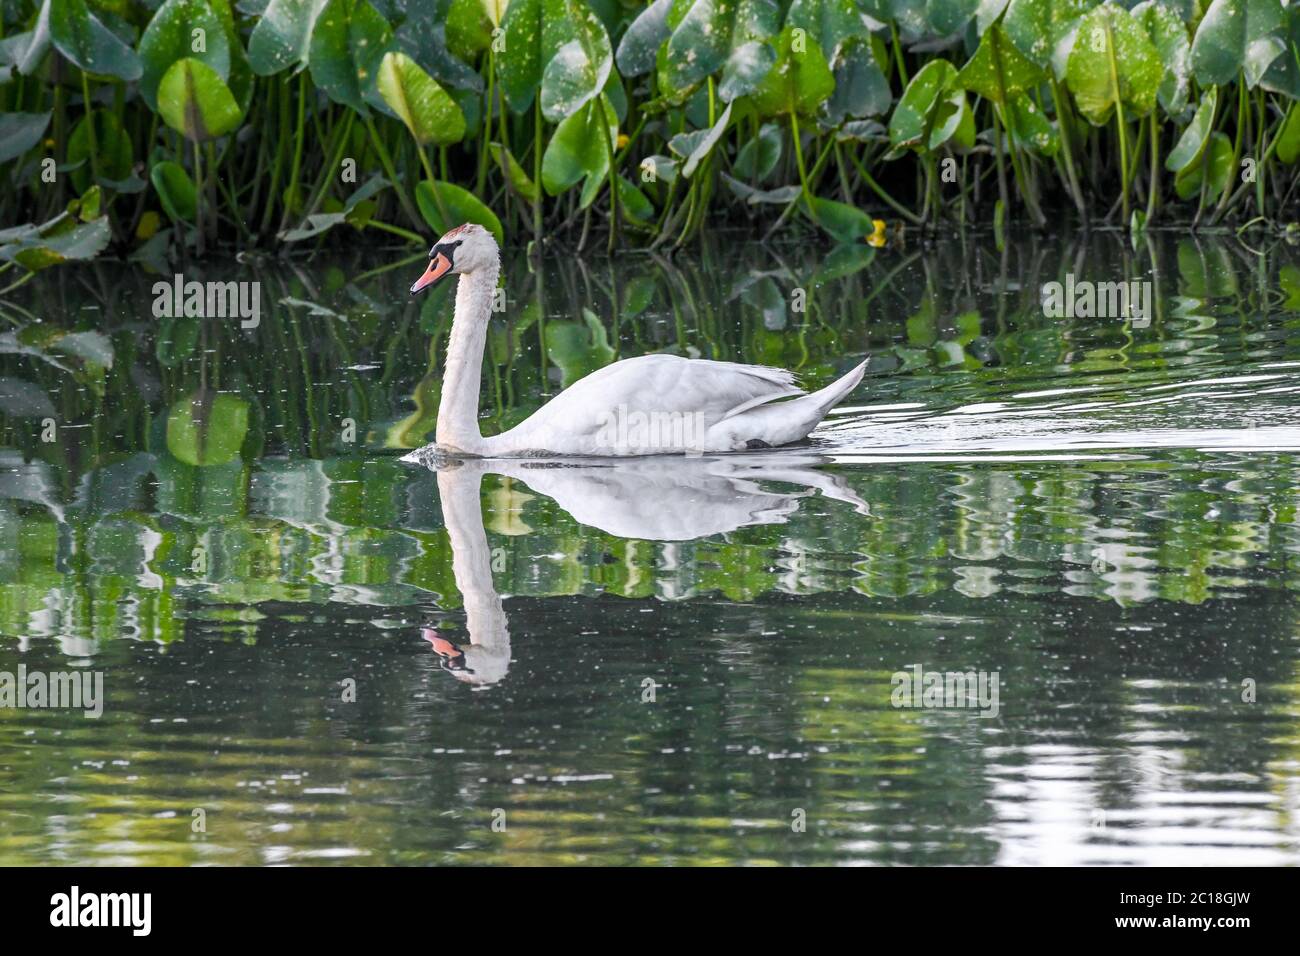 Cisne mudo en agua - Cygnus olor / Cygnus - un par de cisnes mudos en agua nadando en un pantano / estanque - Spatterdock - Nuphar advena Foto de stock